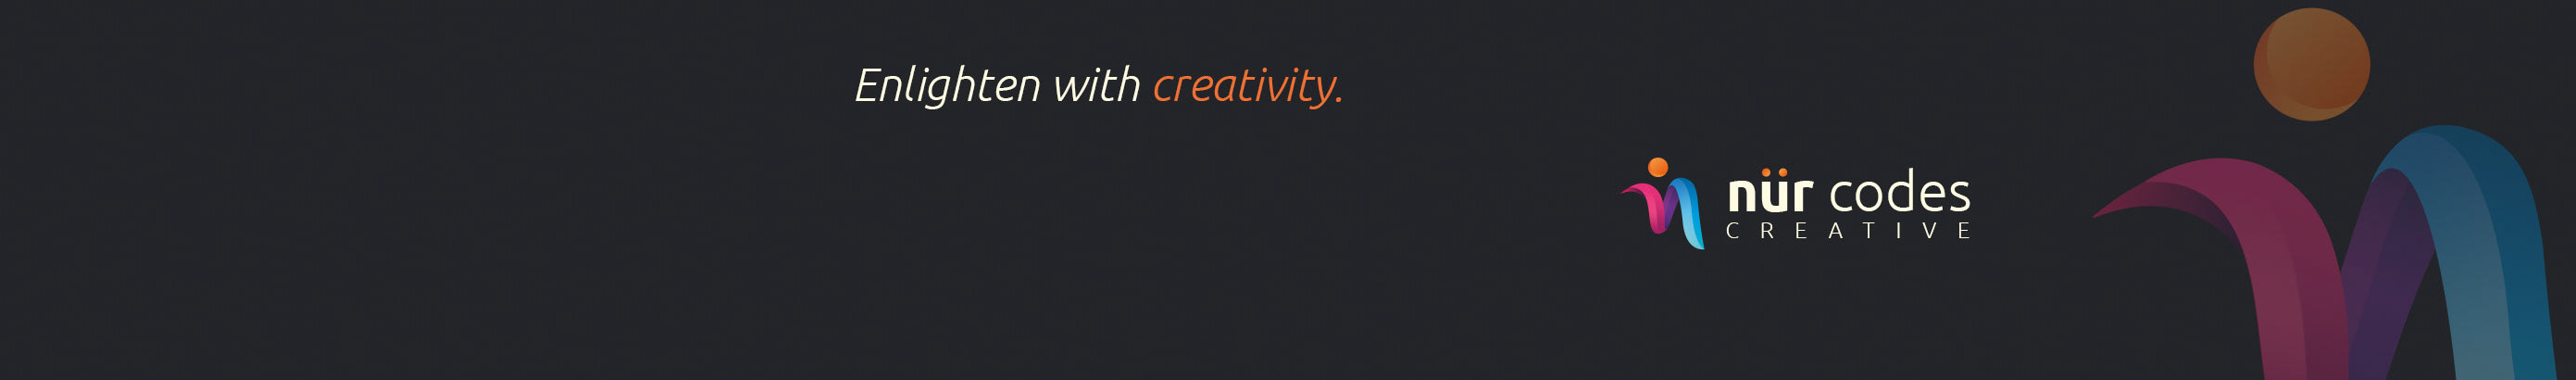 Nur Codes Creative's profile banner